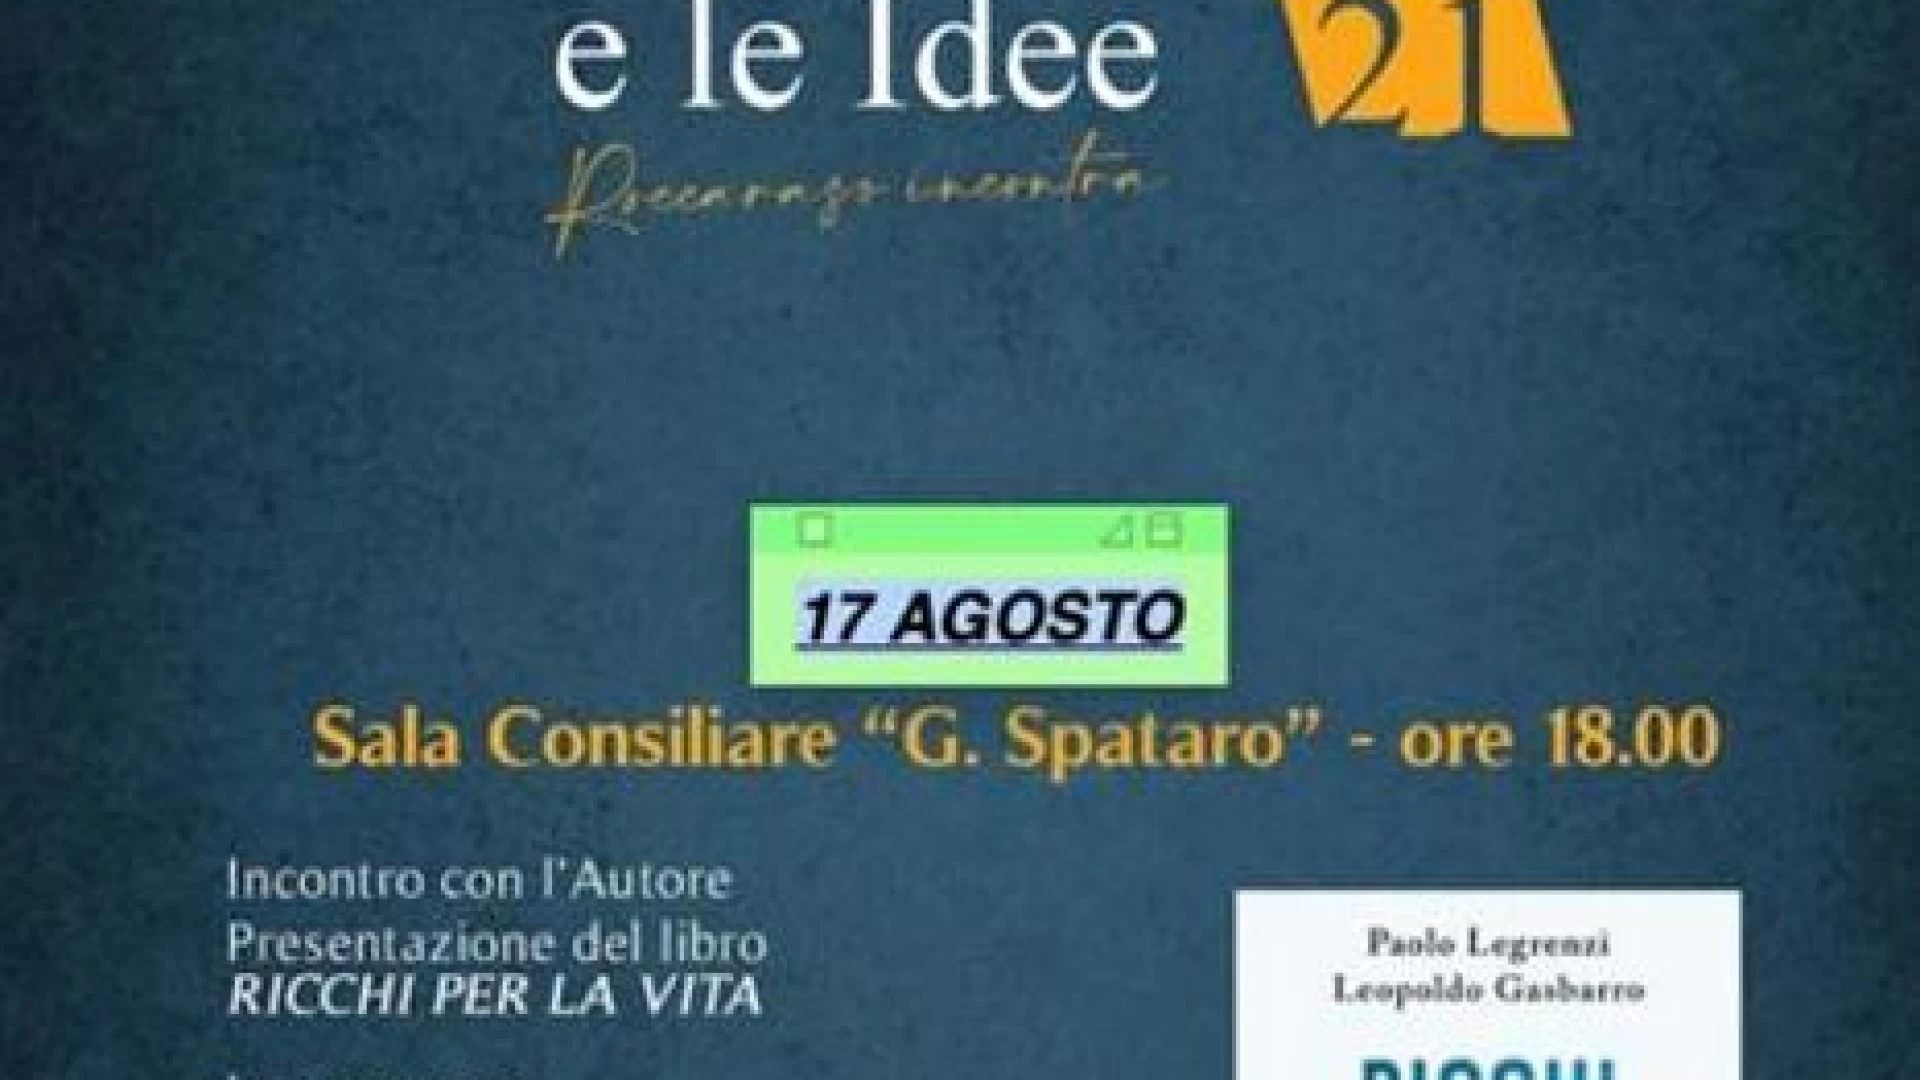 Roccaraso: "Ricchi per la vita", questa sera la presentazione del volume di Leopoldo Gasbarro e Paolo Legrenzi